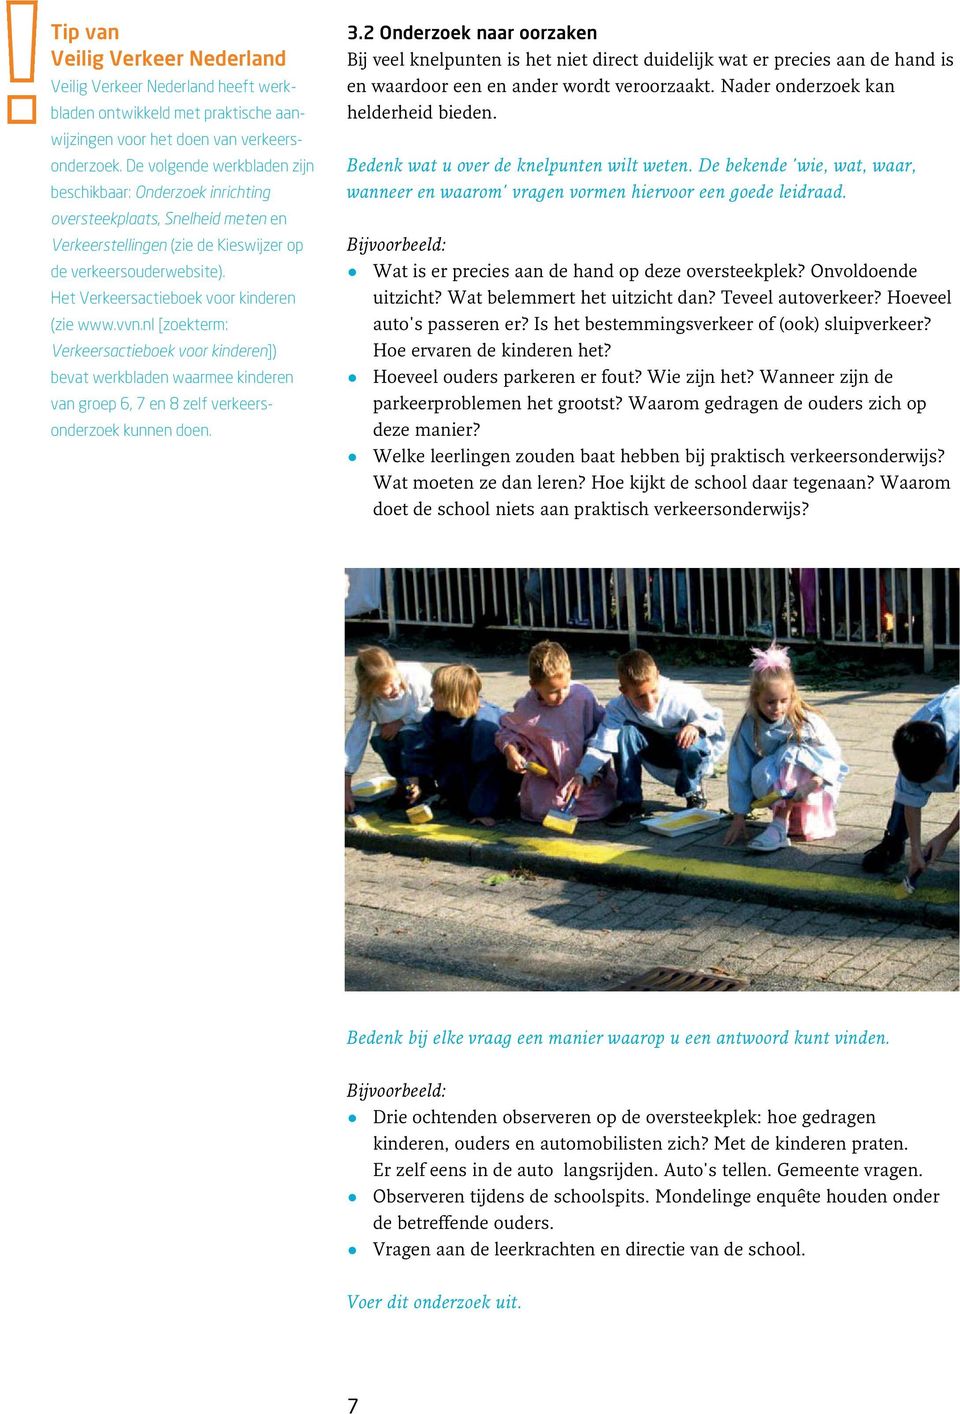 Het Verkeersactieboek voor kinderen (zie www.vvn.nl [zoekterm: Verkeersactieboek voor kinderen]) bevat werkbladen waarmee kinderen van groep 6, 7 en 8 zelf verkeers - onderzoek kunnen doen. 3.